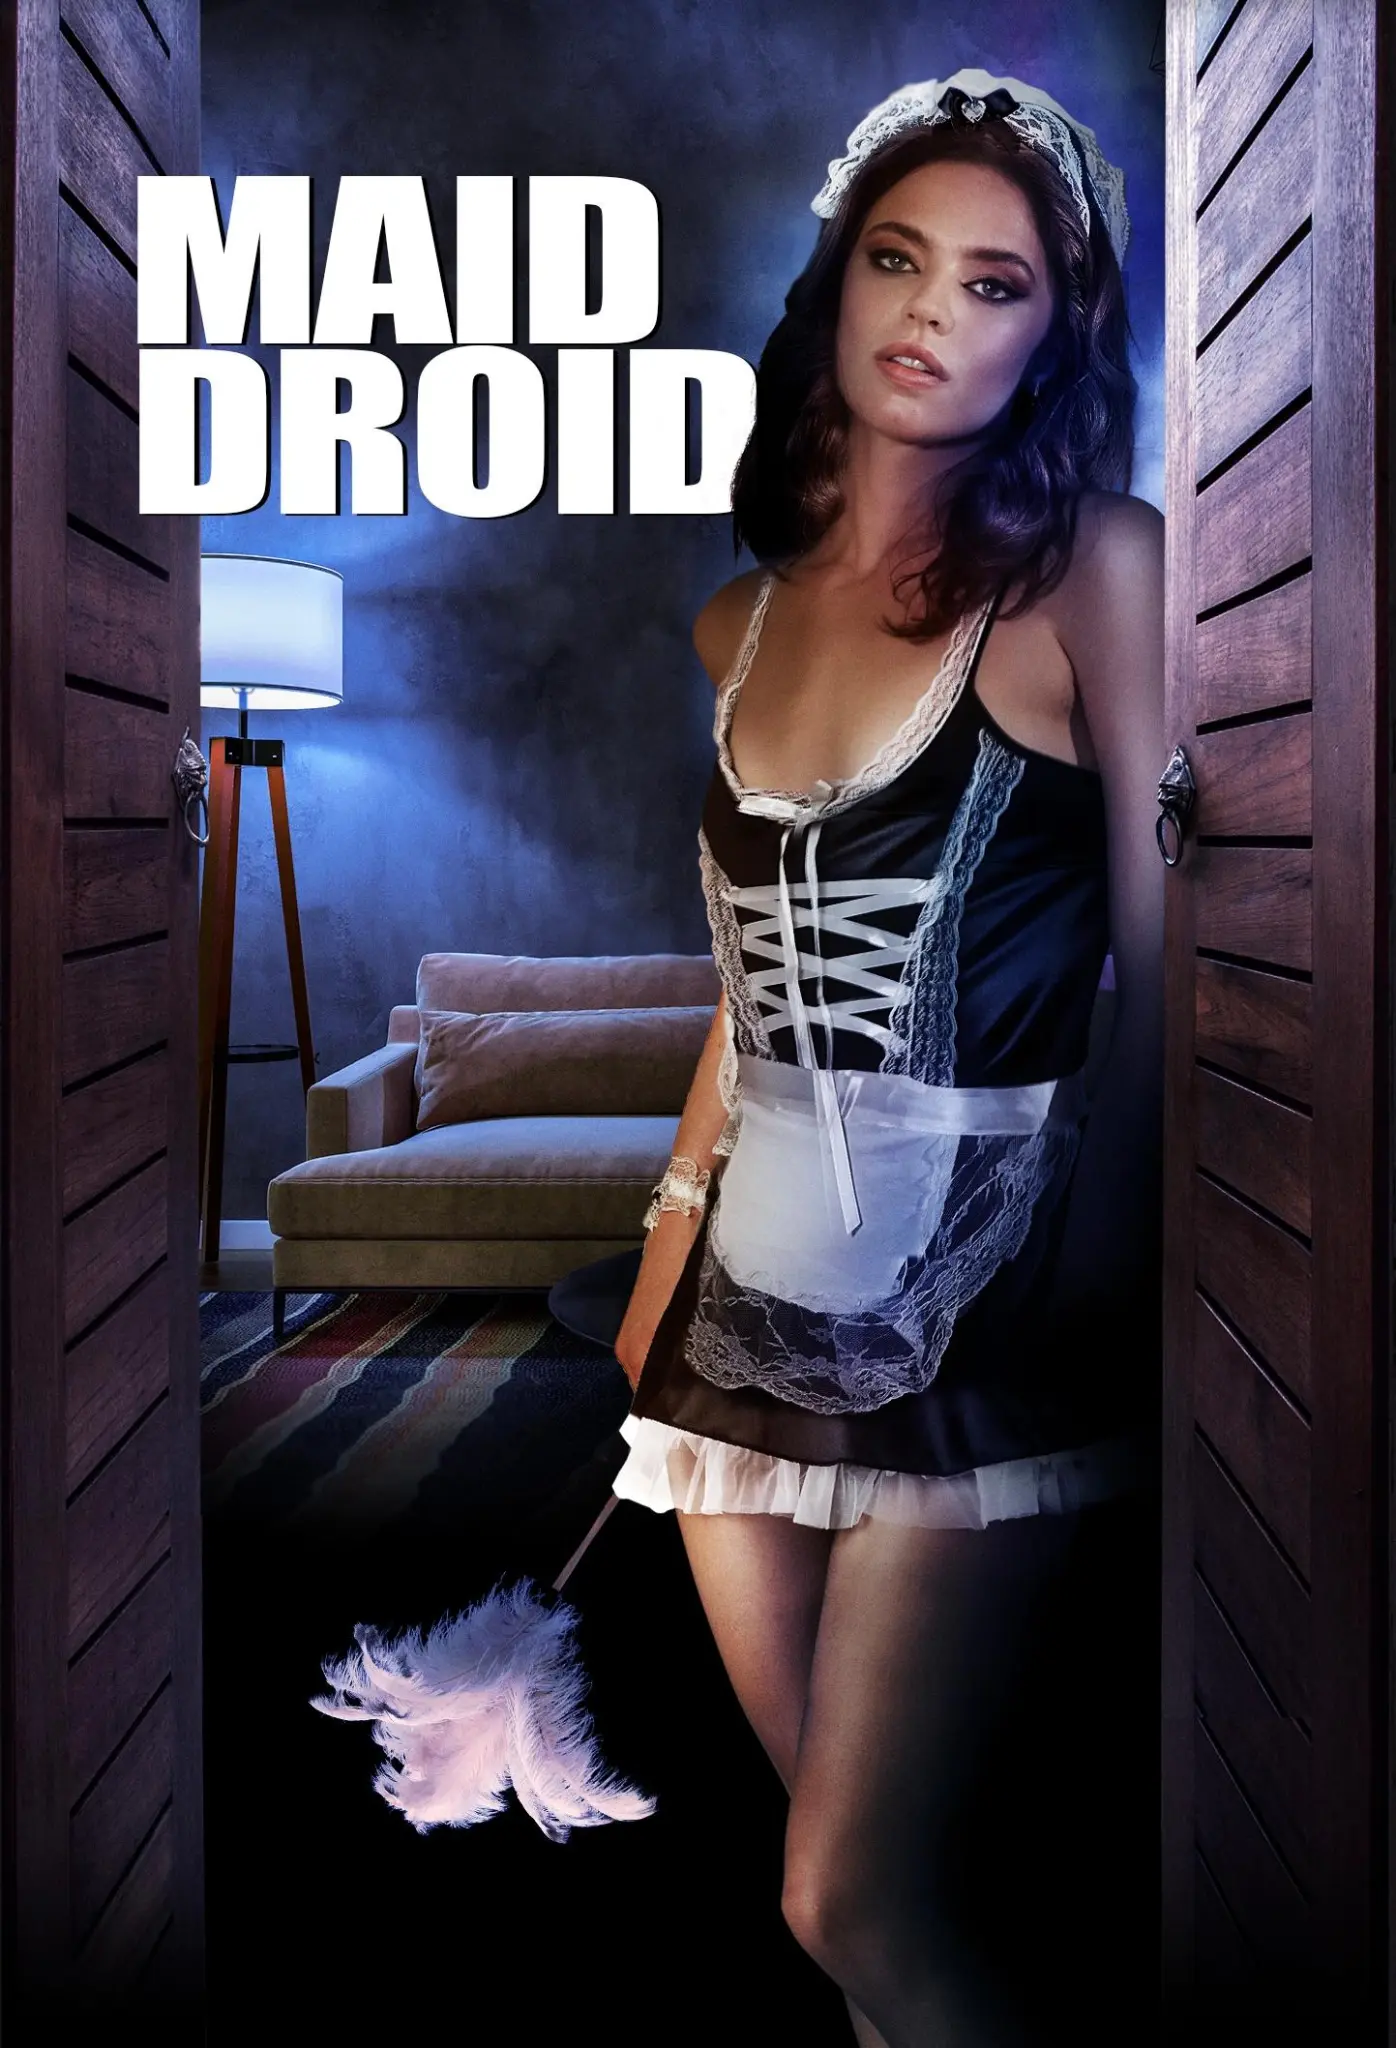 FULL MOVIE: Maid Droid (2023)